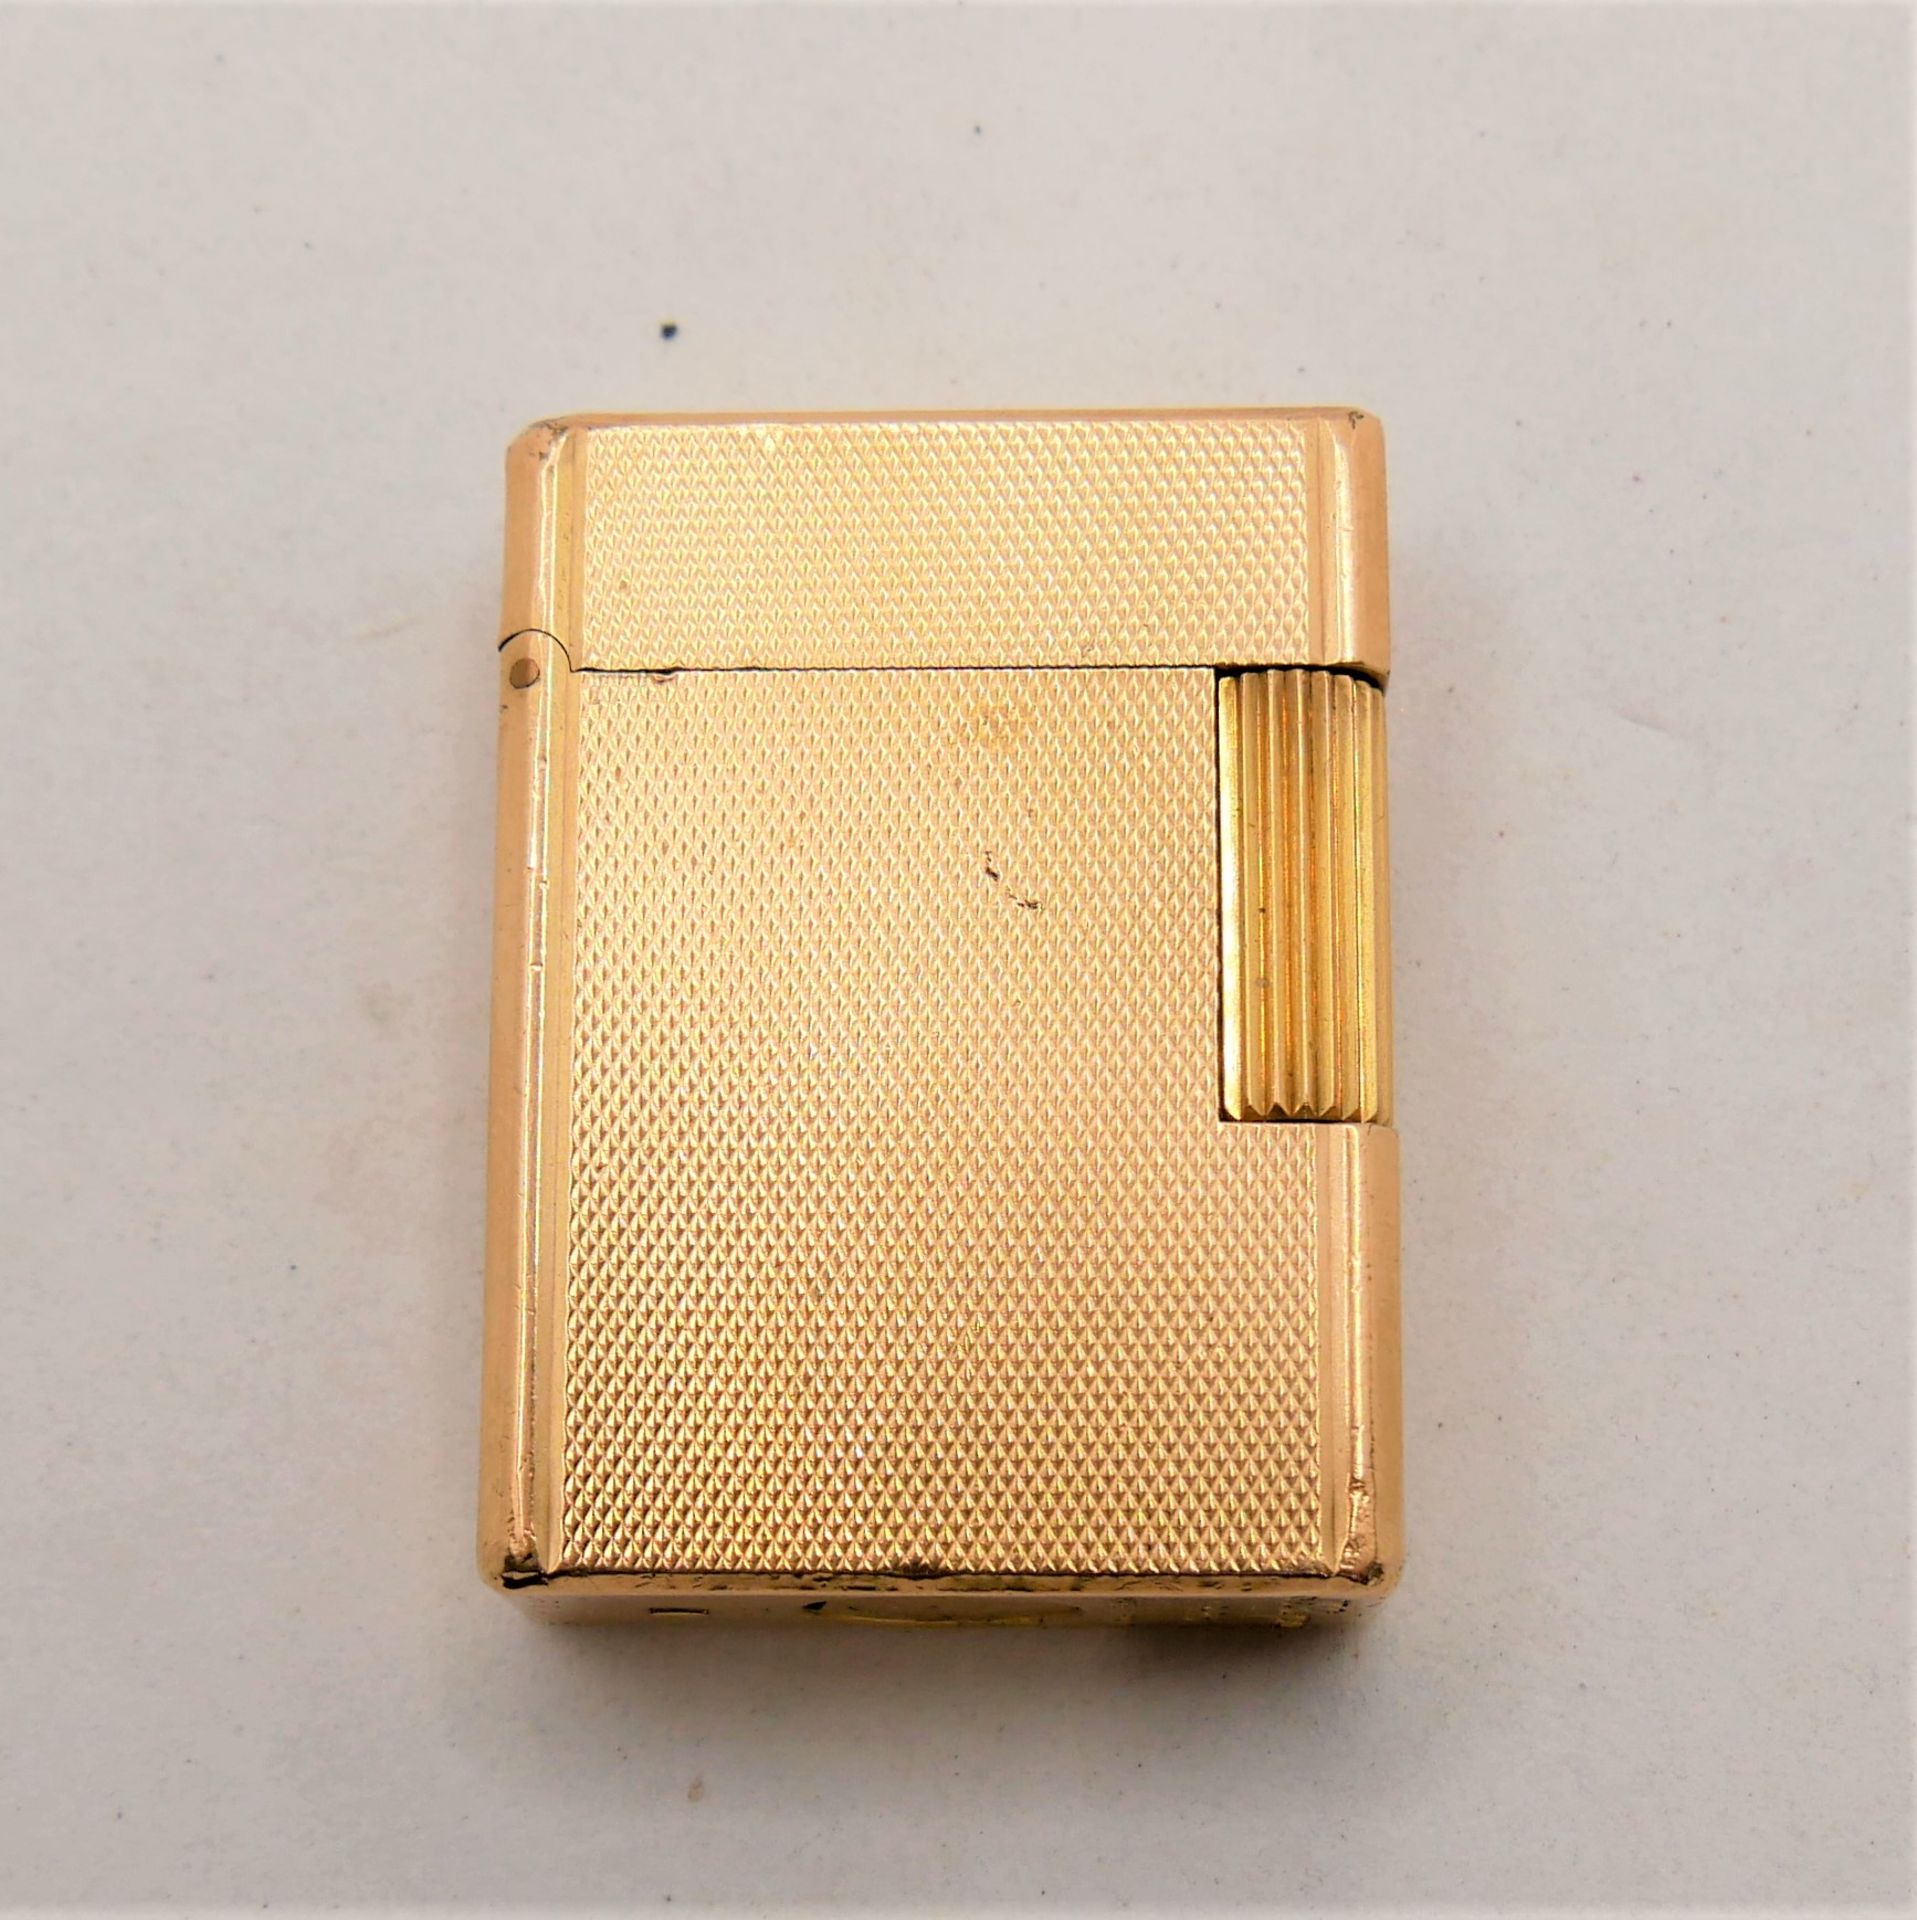 Feuerzeug S.T.Dupont Paris, Made in France, Nr. 20 u, vergoldet. Funktion geprüft. Gebrauchter